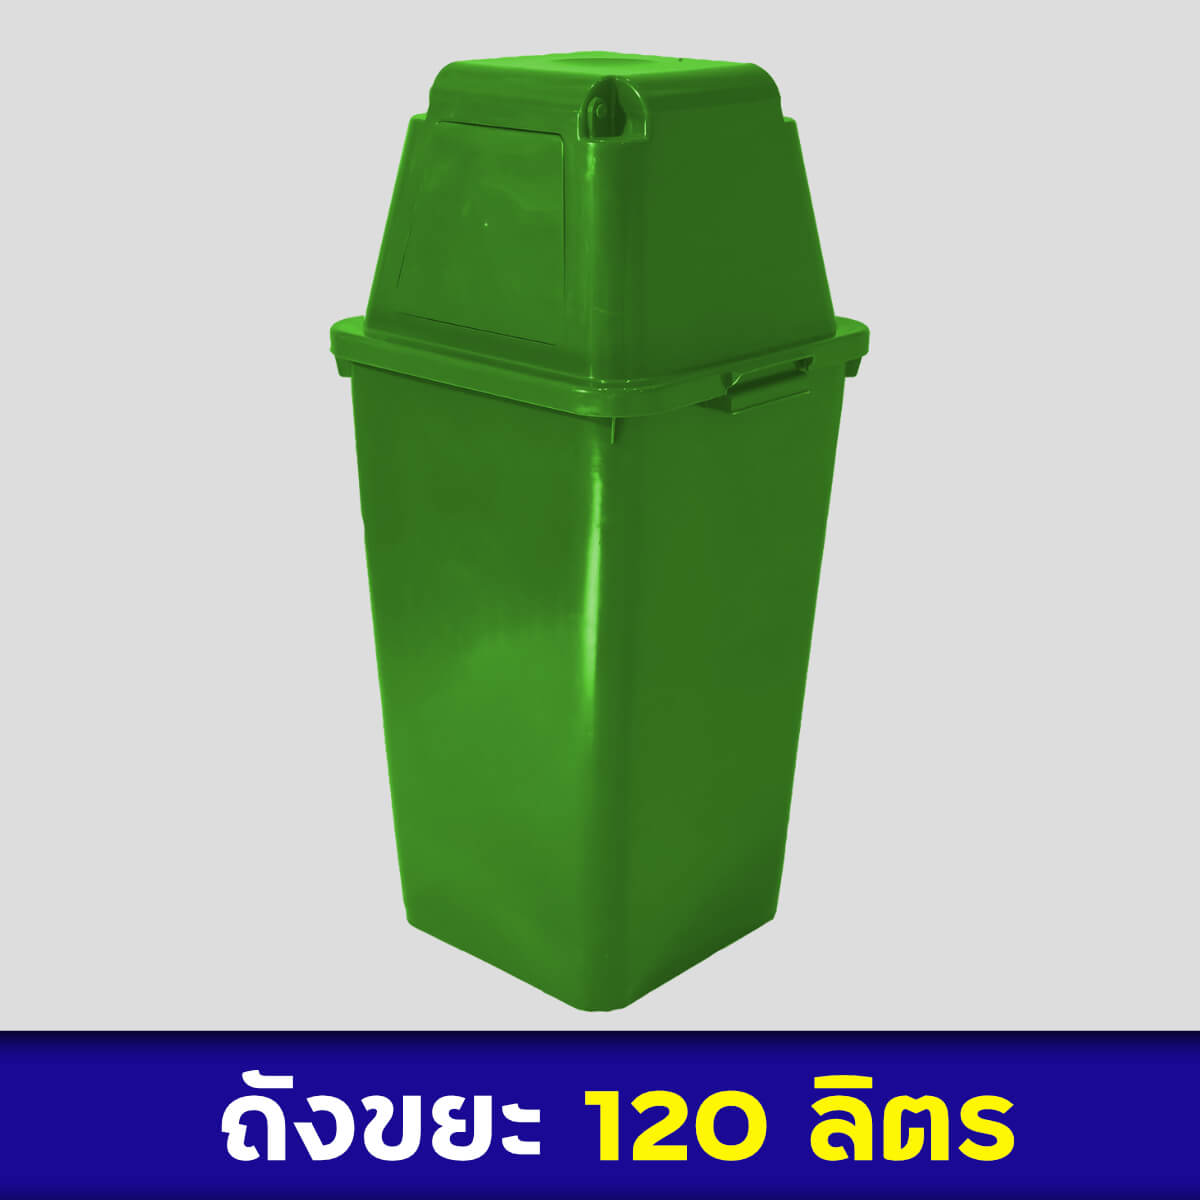 ถังขยะสีเขียว 120ลิตร